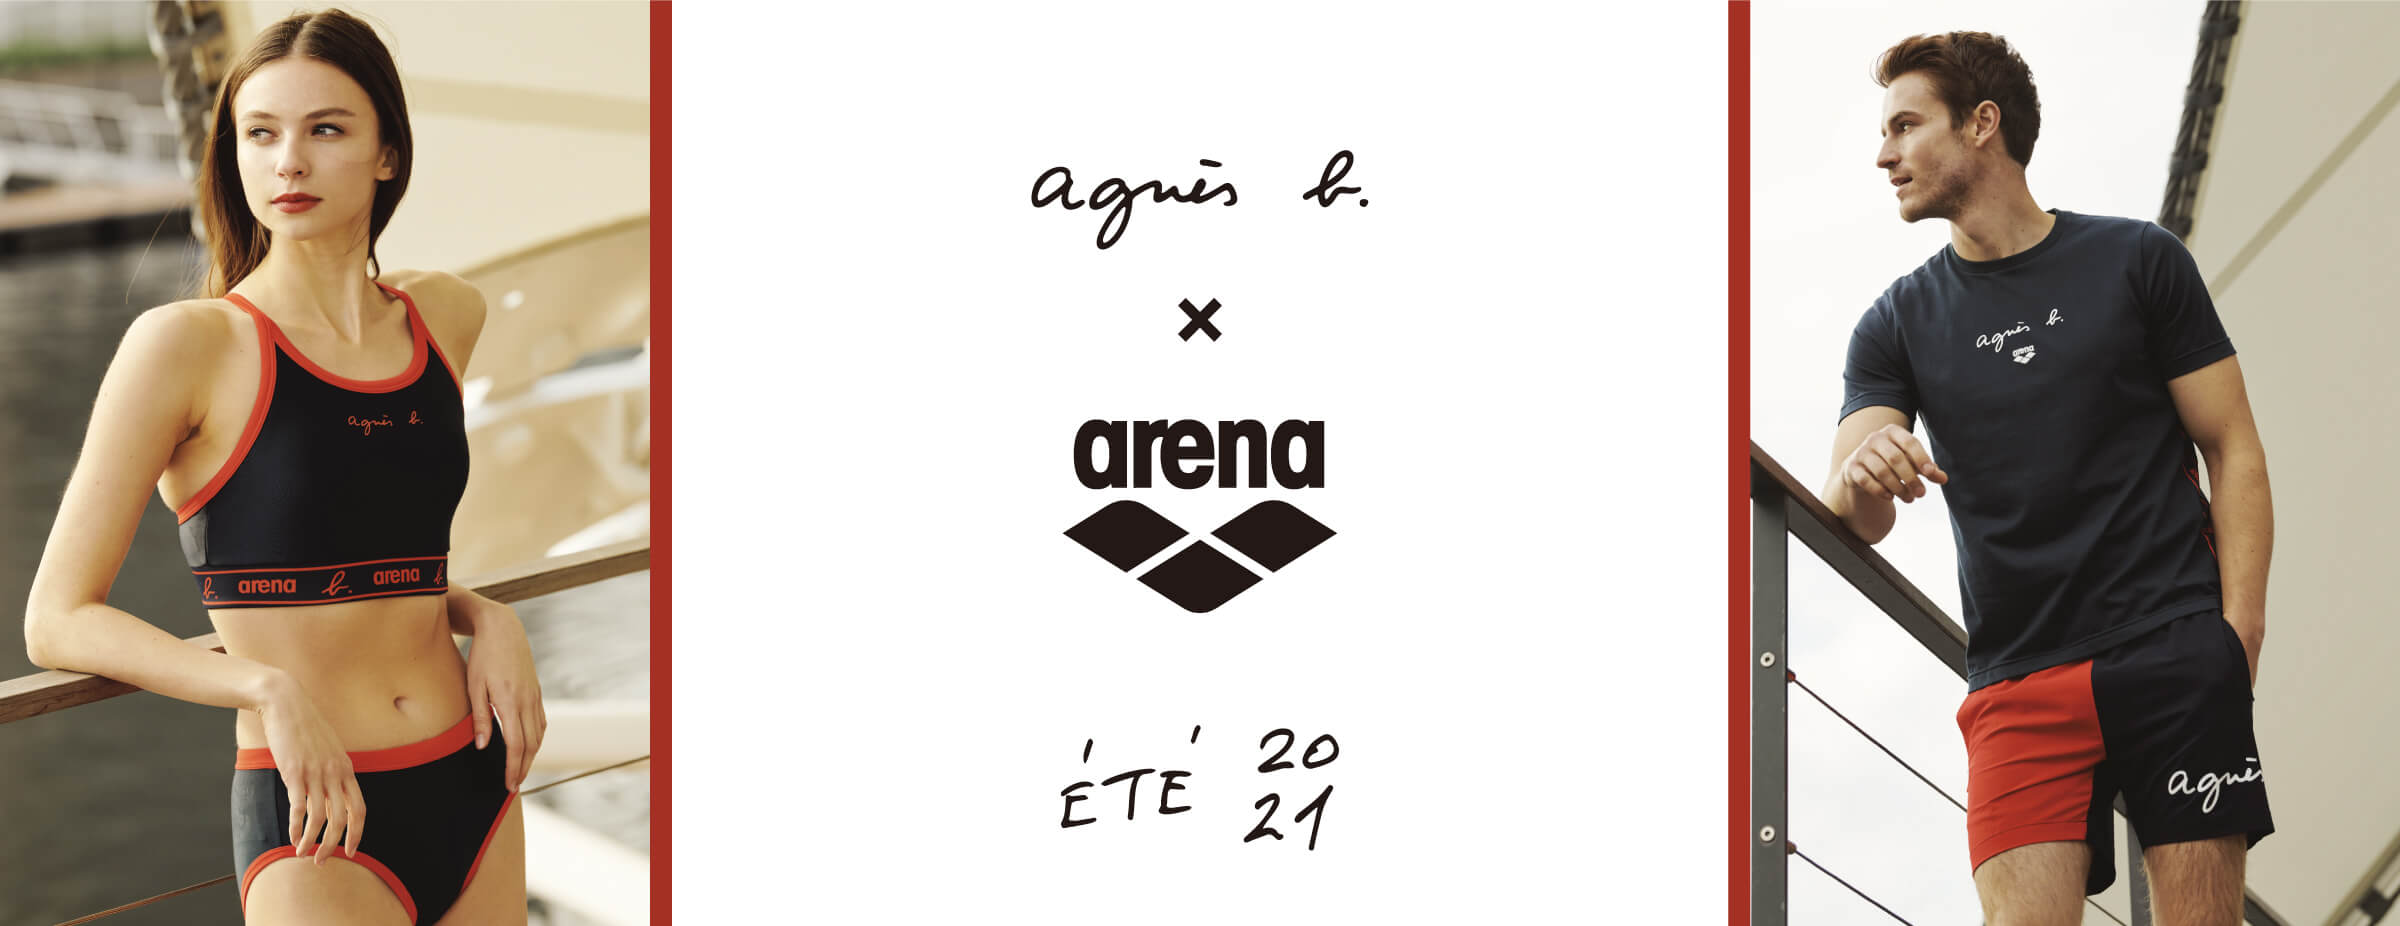 アリーナ】agnès b. x arena | デサントストア-DESCENTE STORE-